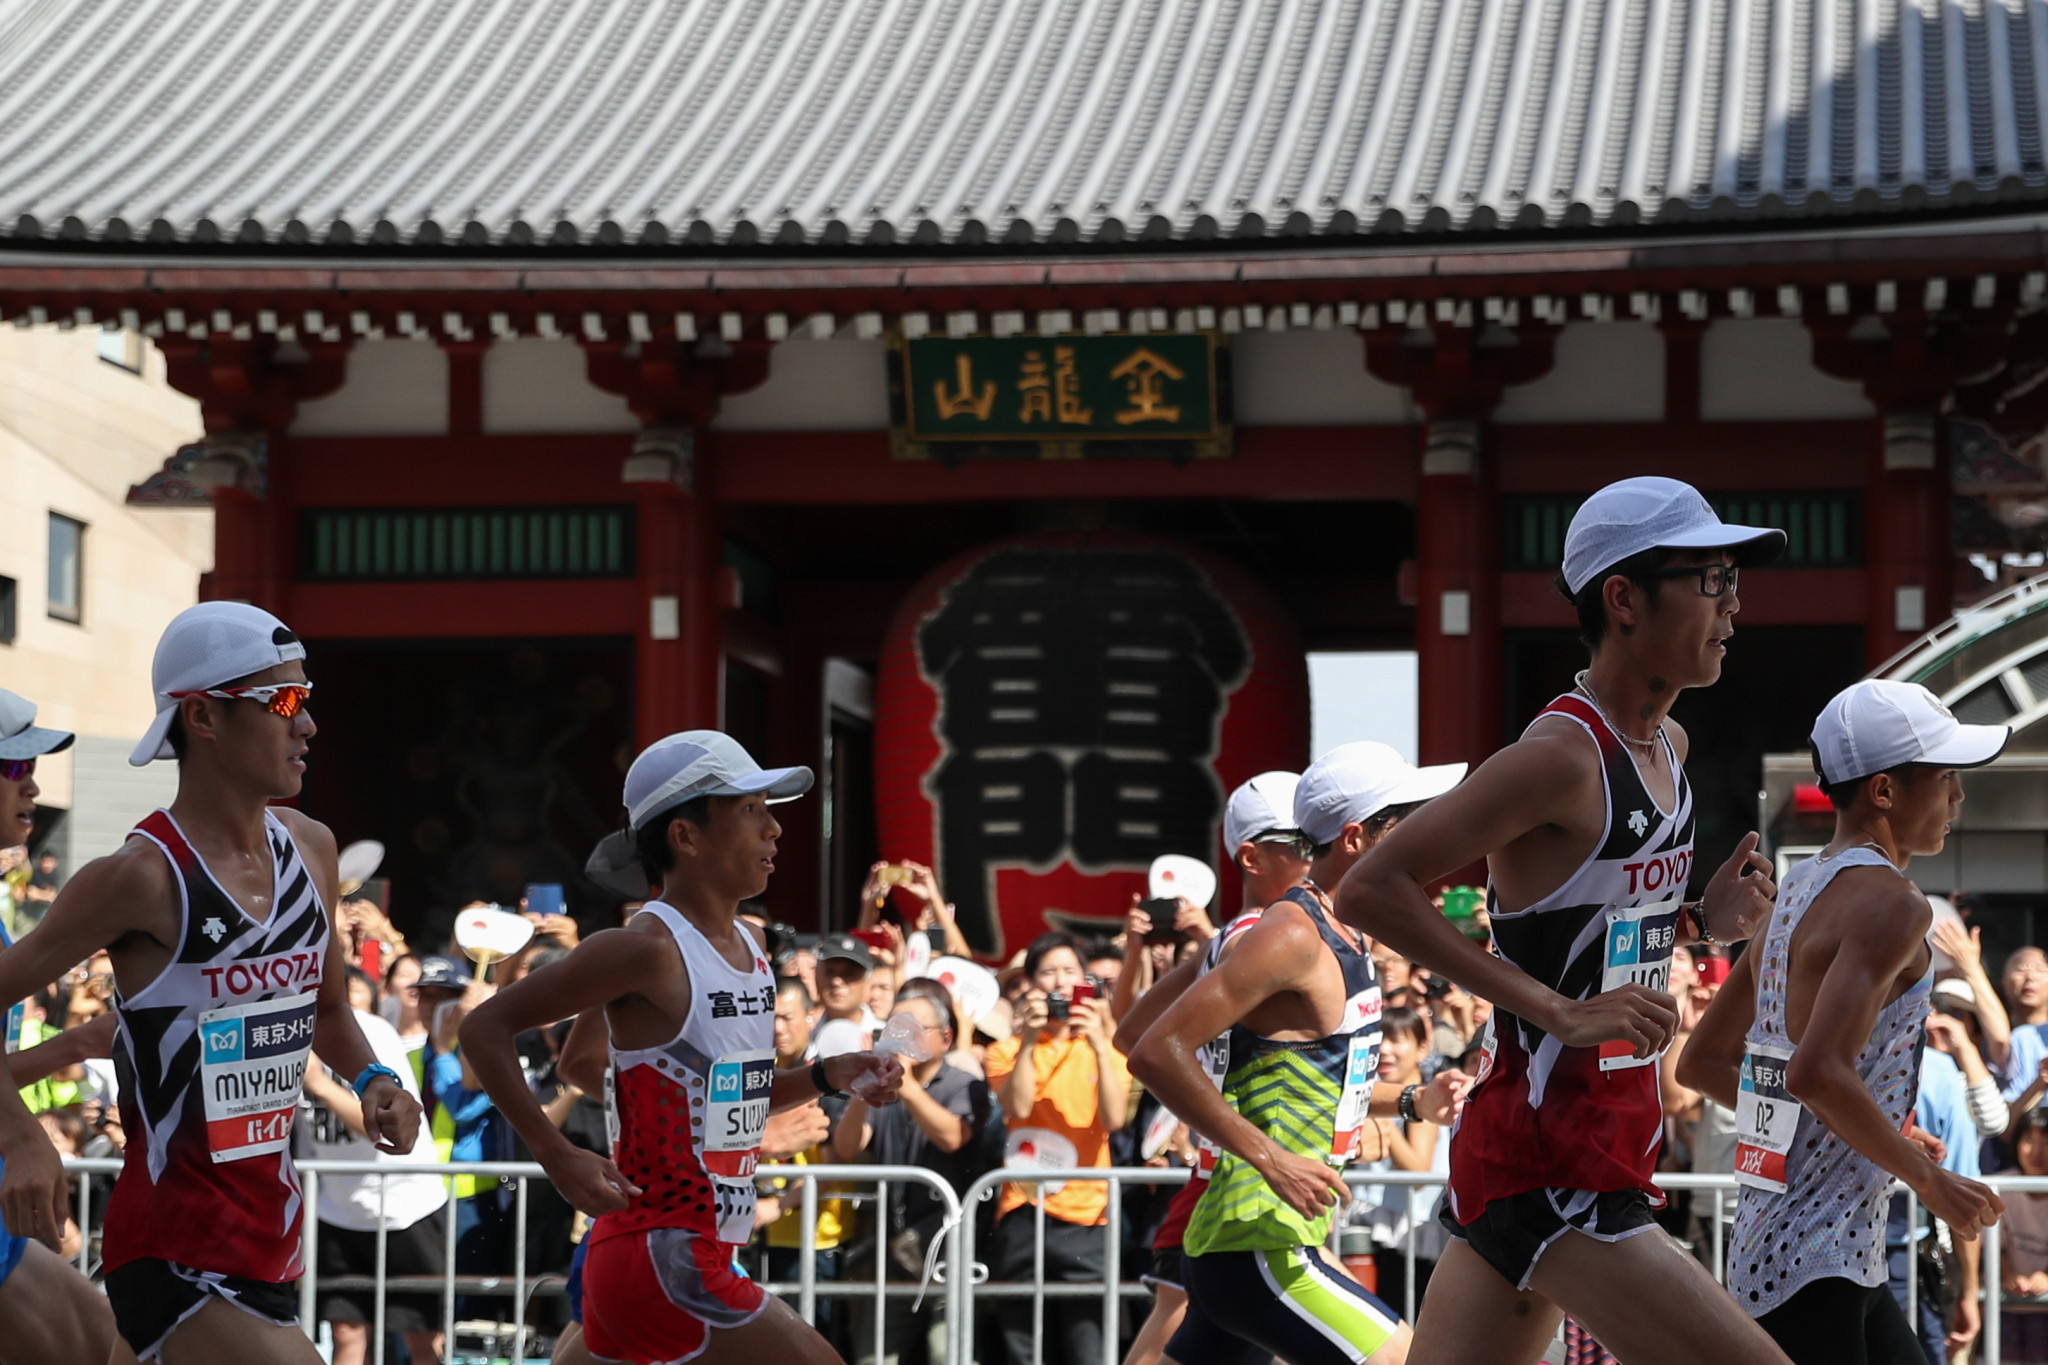 The Tokyo 2020 marathon course passes famous city landmarks ©Getty Images